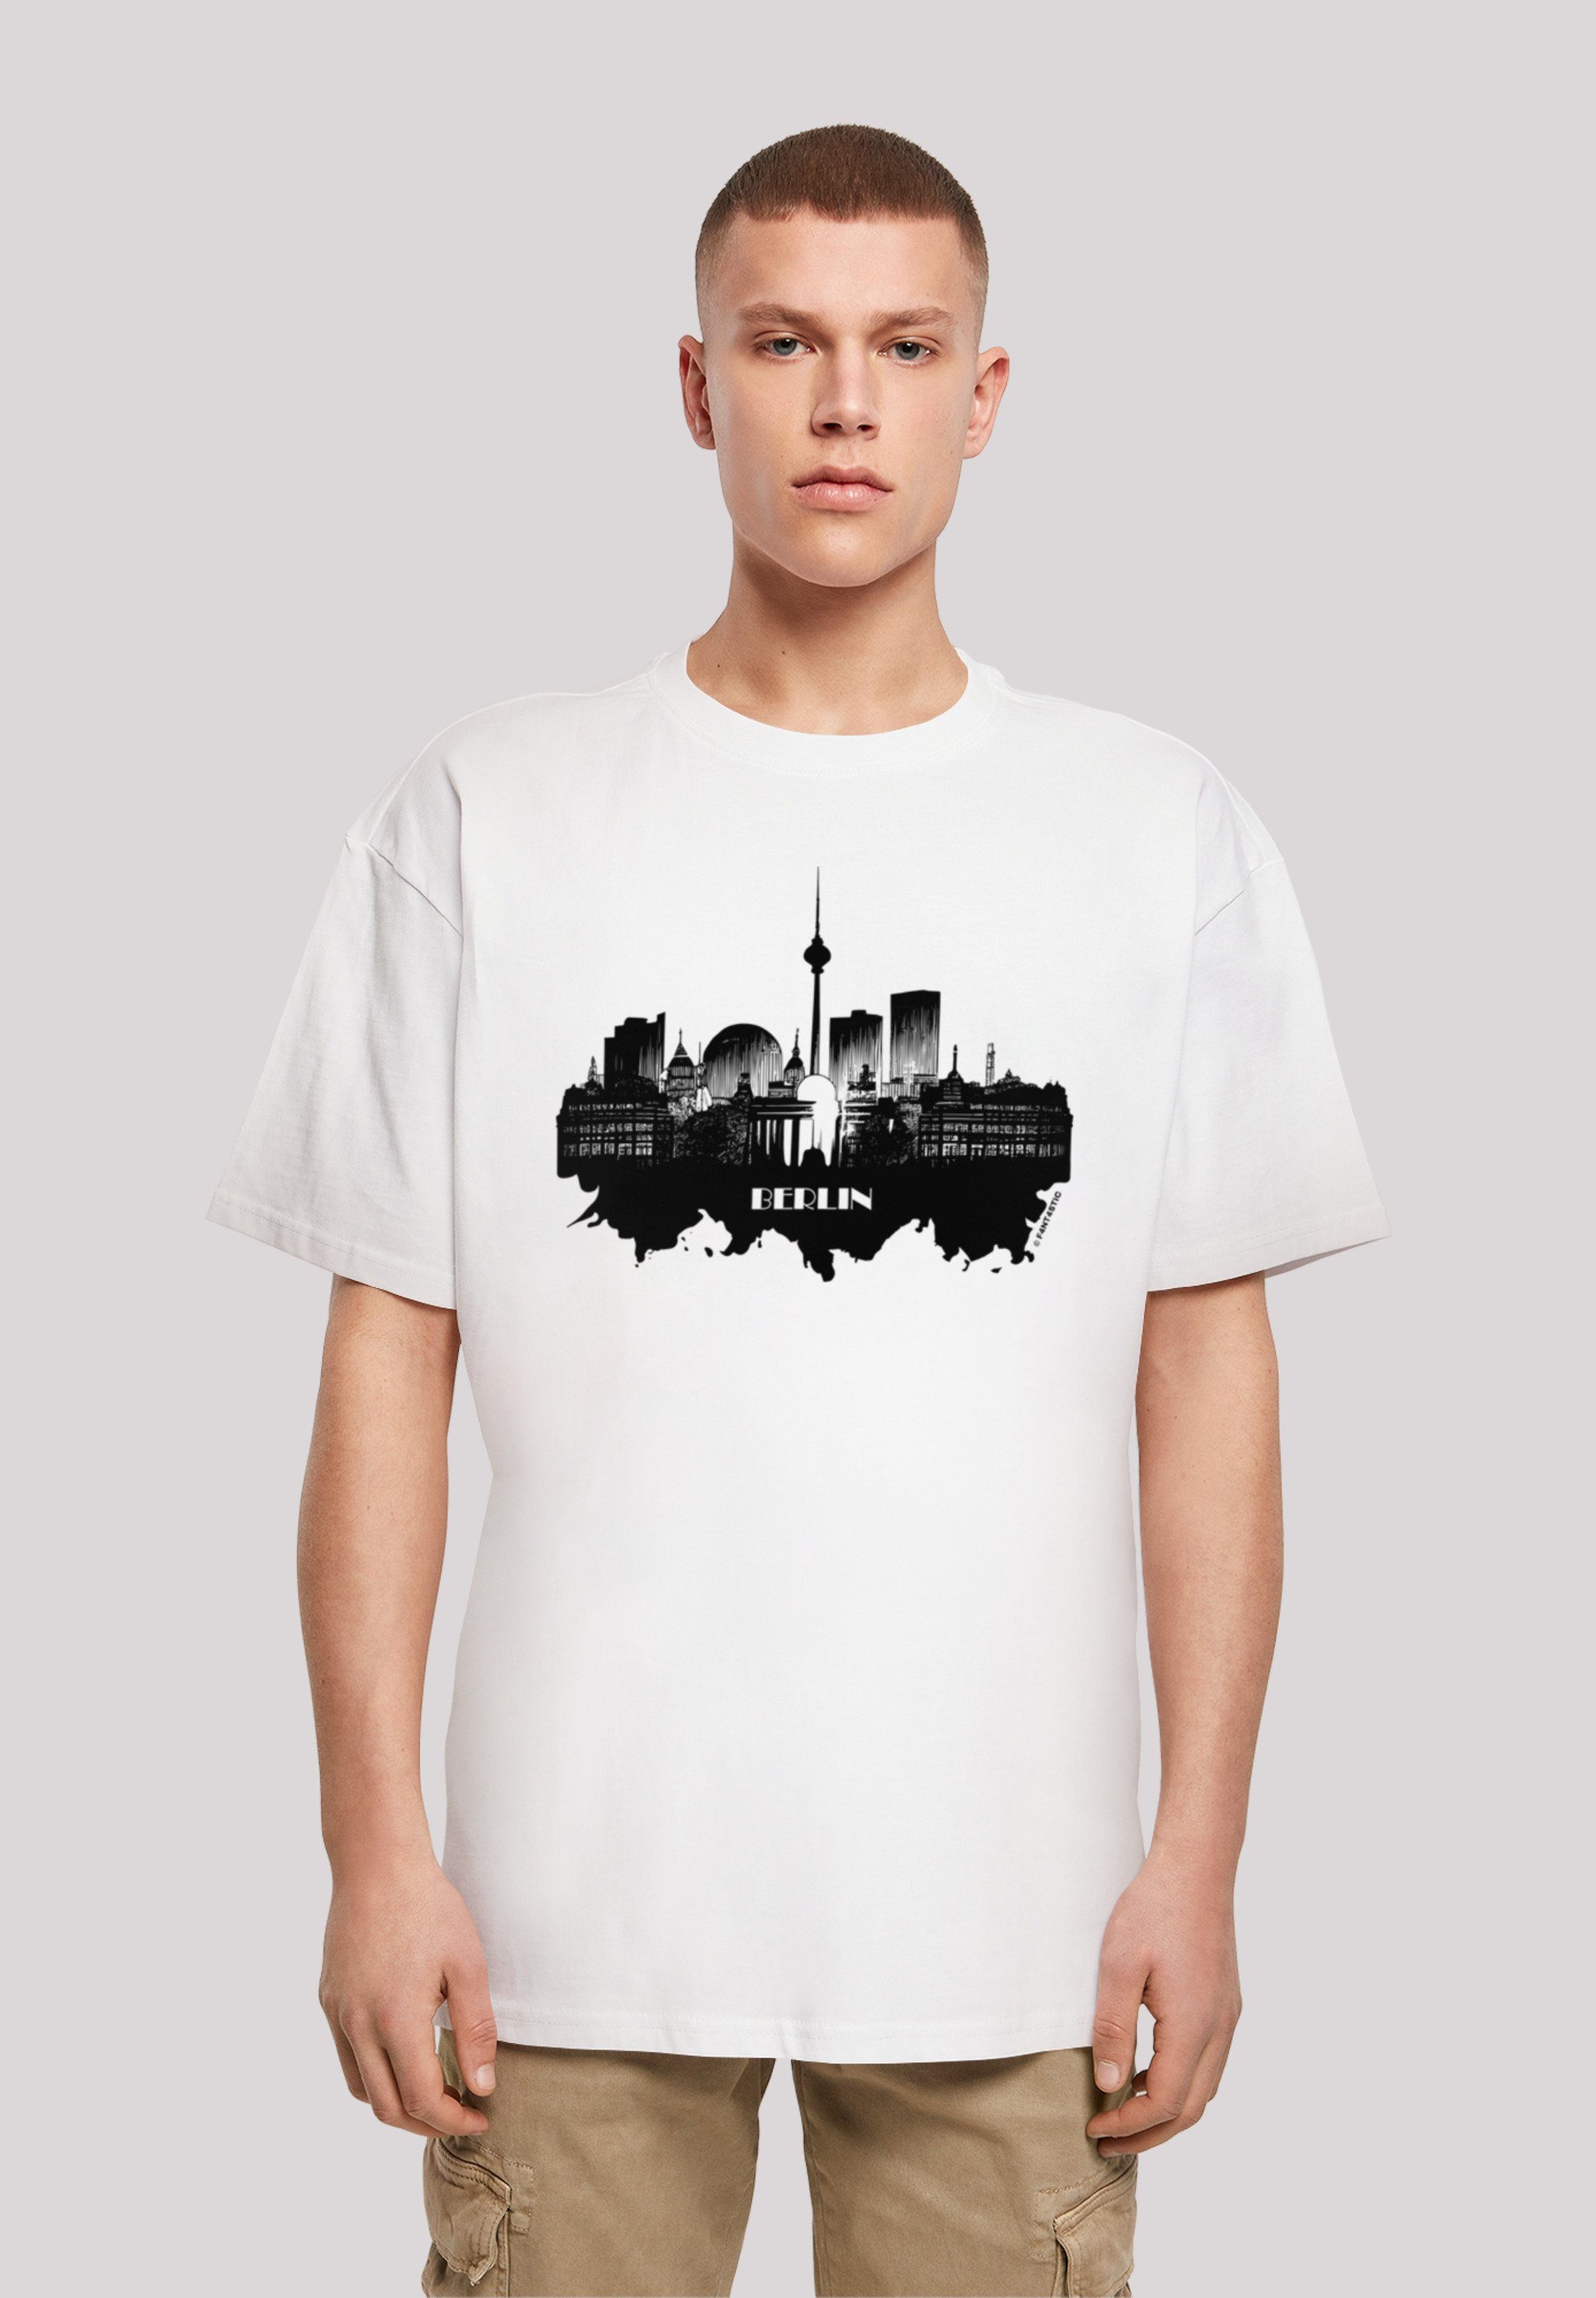 Größe weit aus, bitte Collection T-Shirt bestellen skyline - Print, Cities kleiner Berlin Fällt F4NT4STIC eine